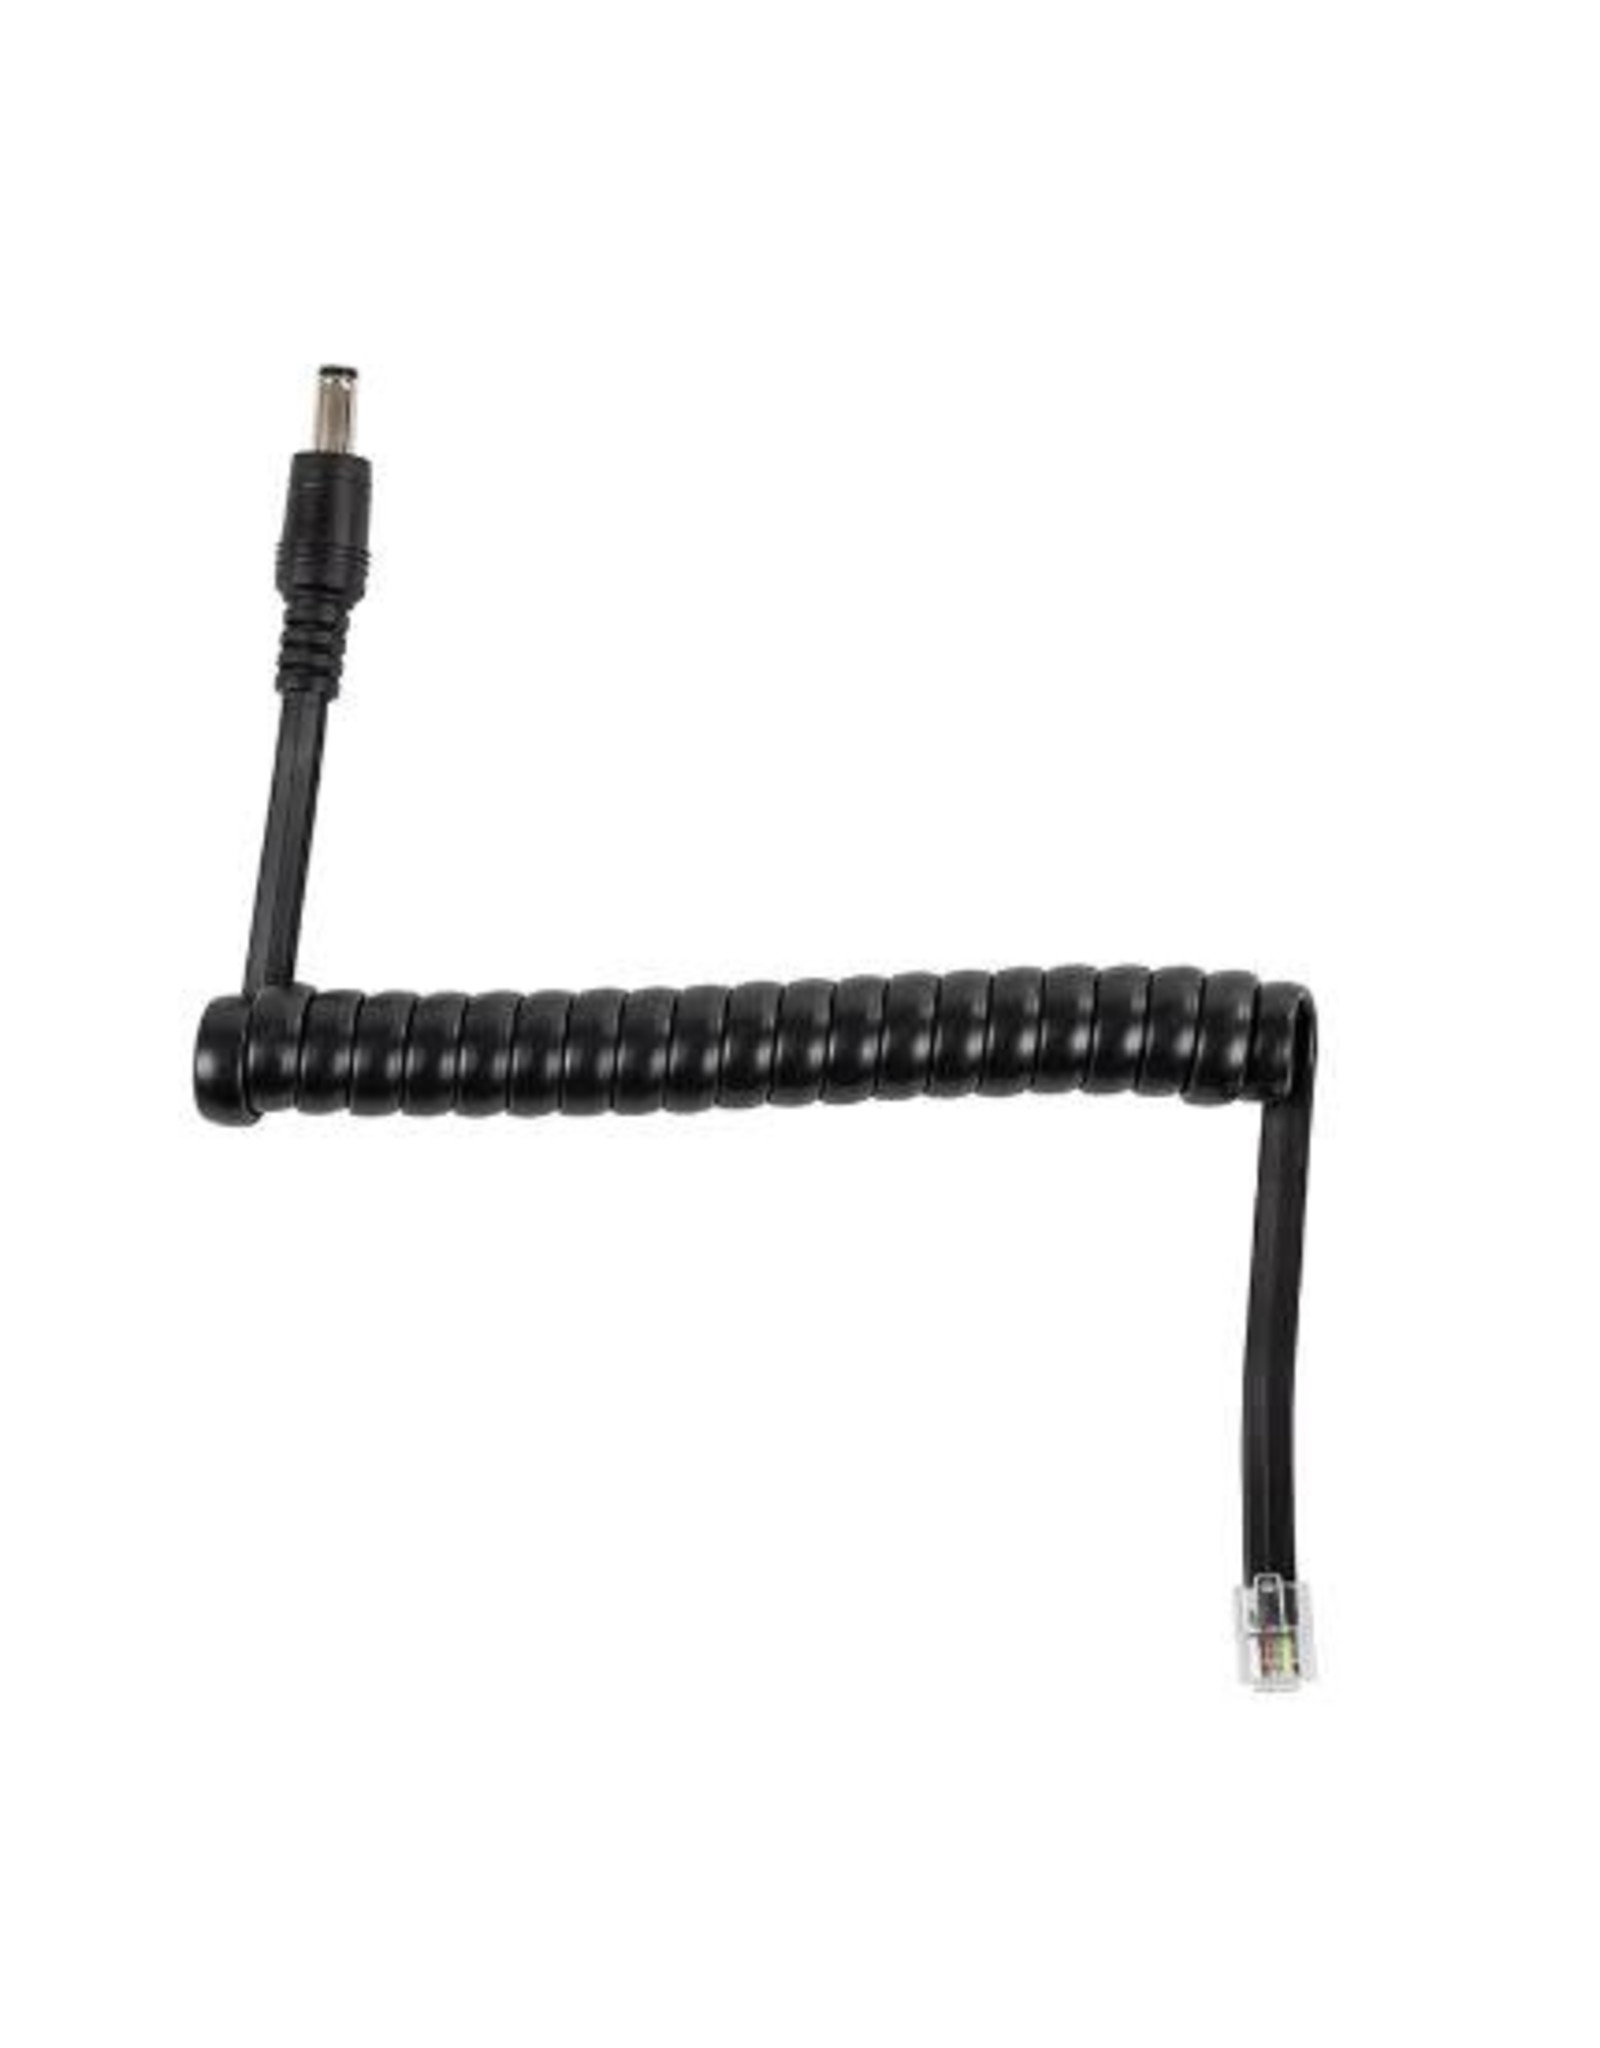 Celestron Celestron  AUX Power Cable for Smart DewHeater Controllers - 94038